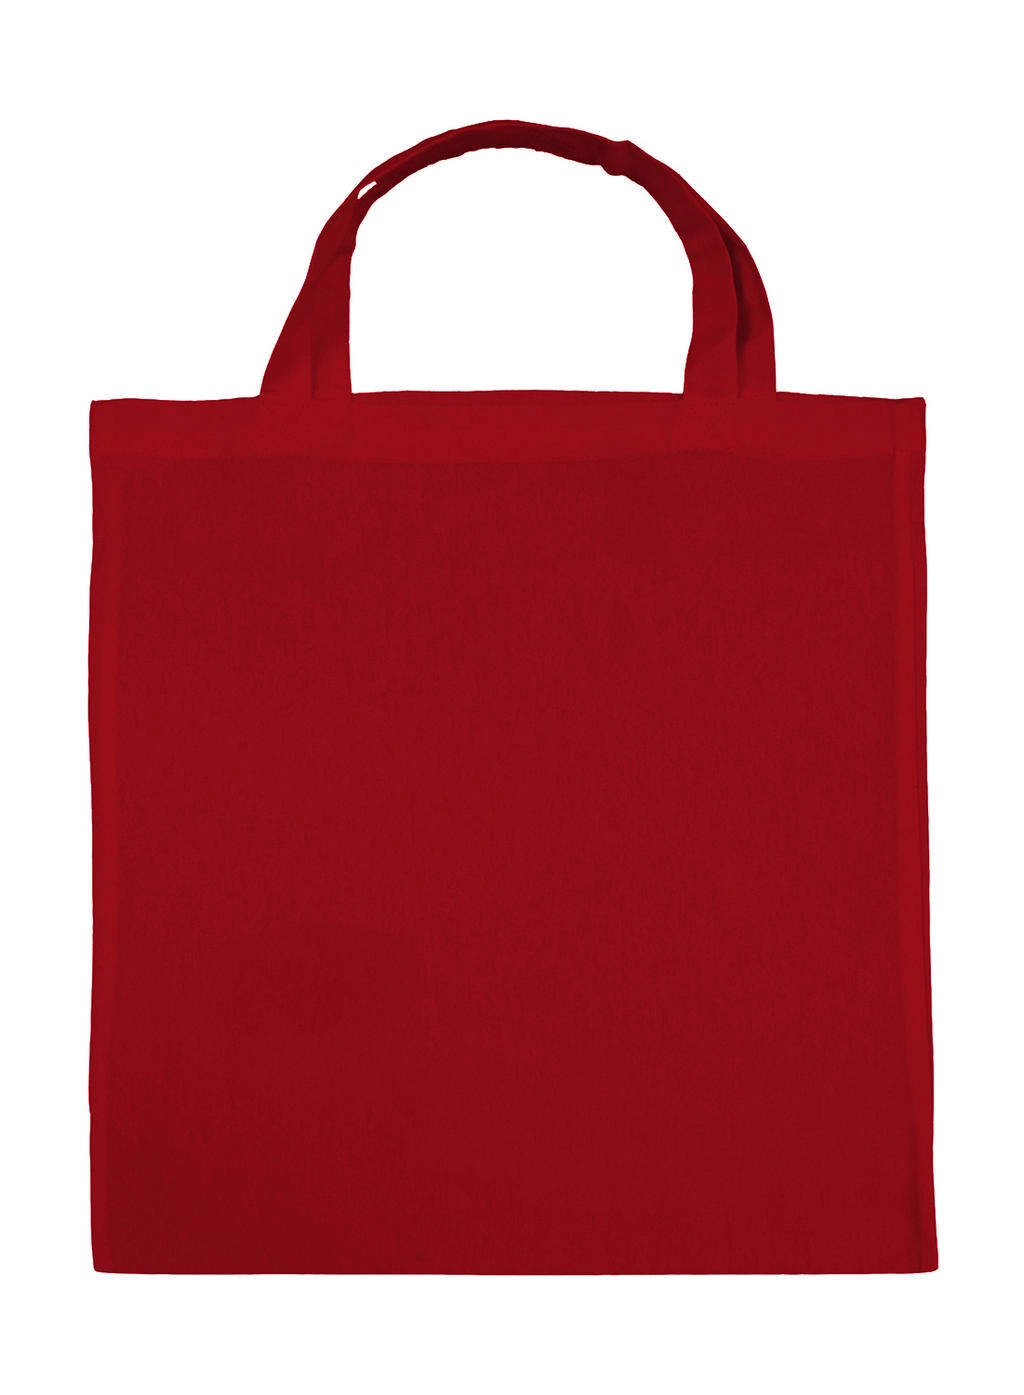 Cotton Shopper SH zum Besticken und Bedrucken in der Farbe Red mit Ihren Logo, Schriftzug oder Motiv.